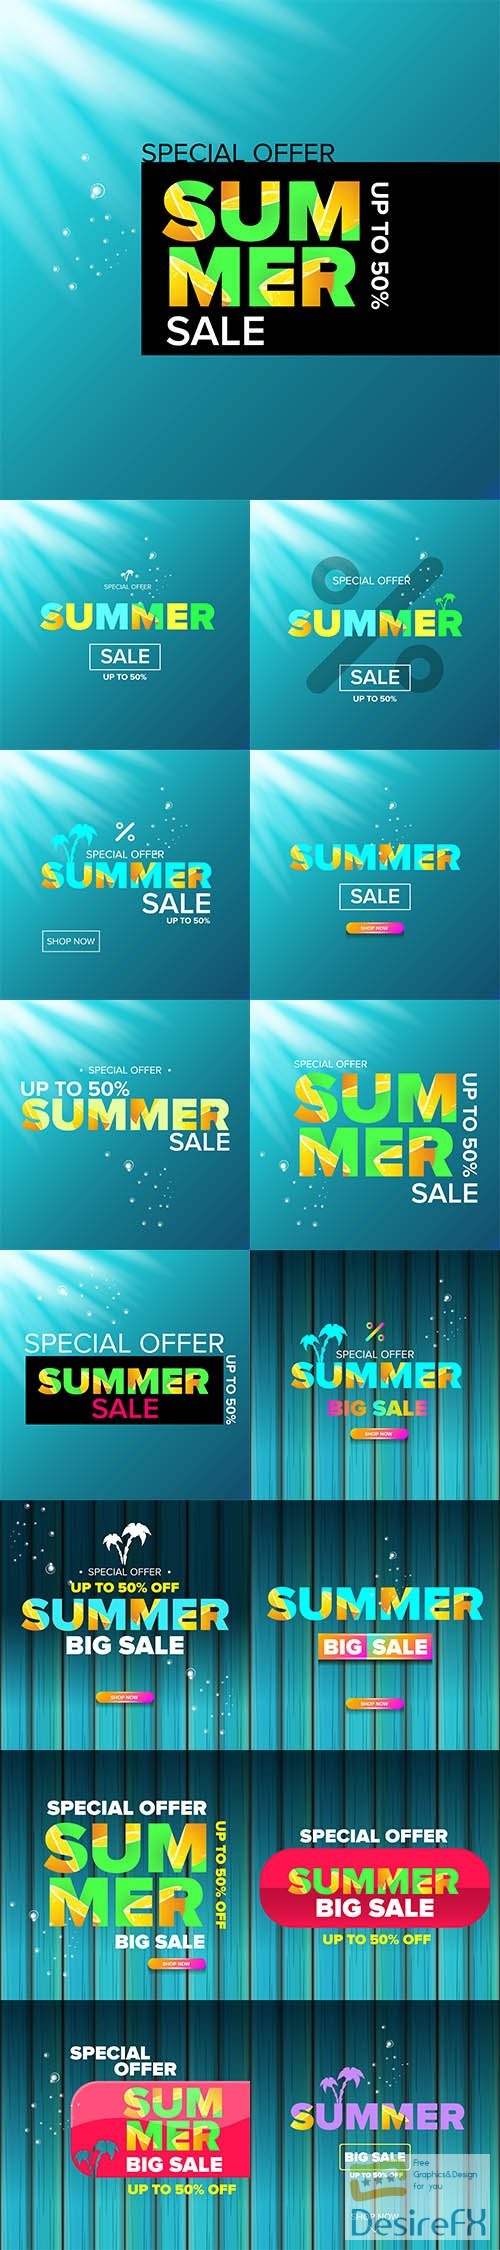 Vector Summer sale modern color design template web banner or poster